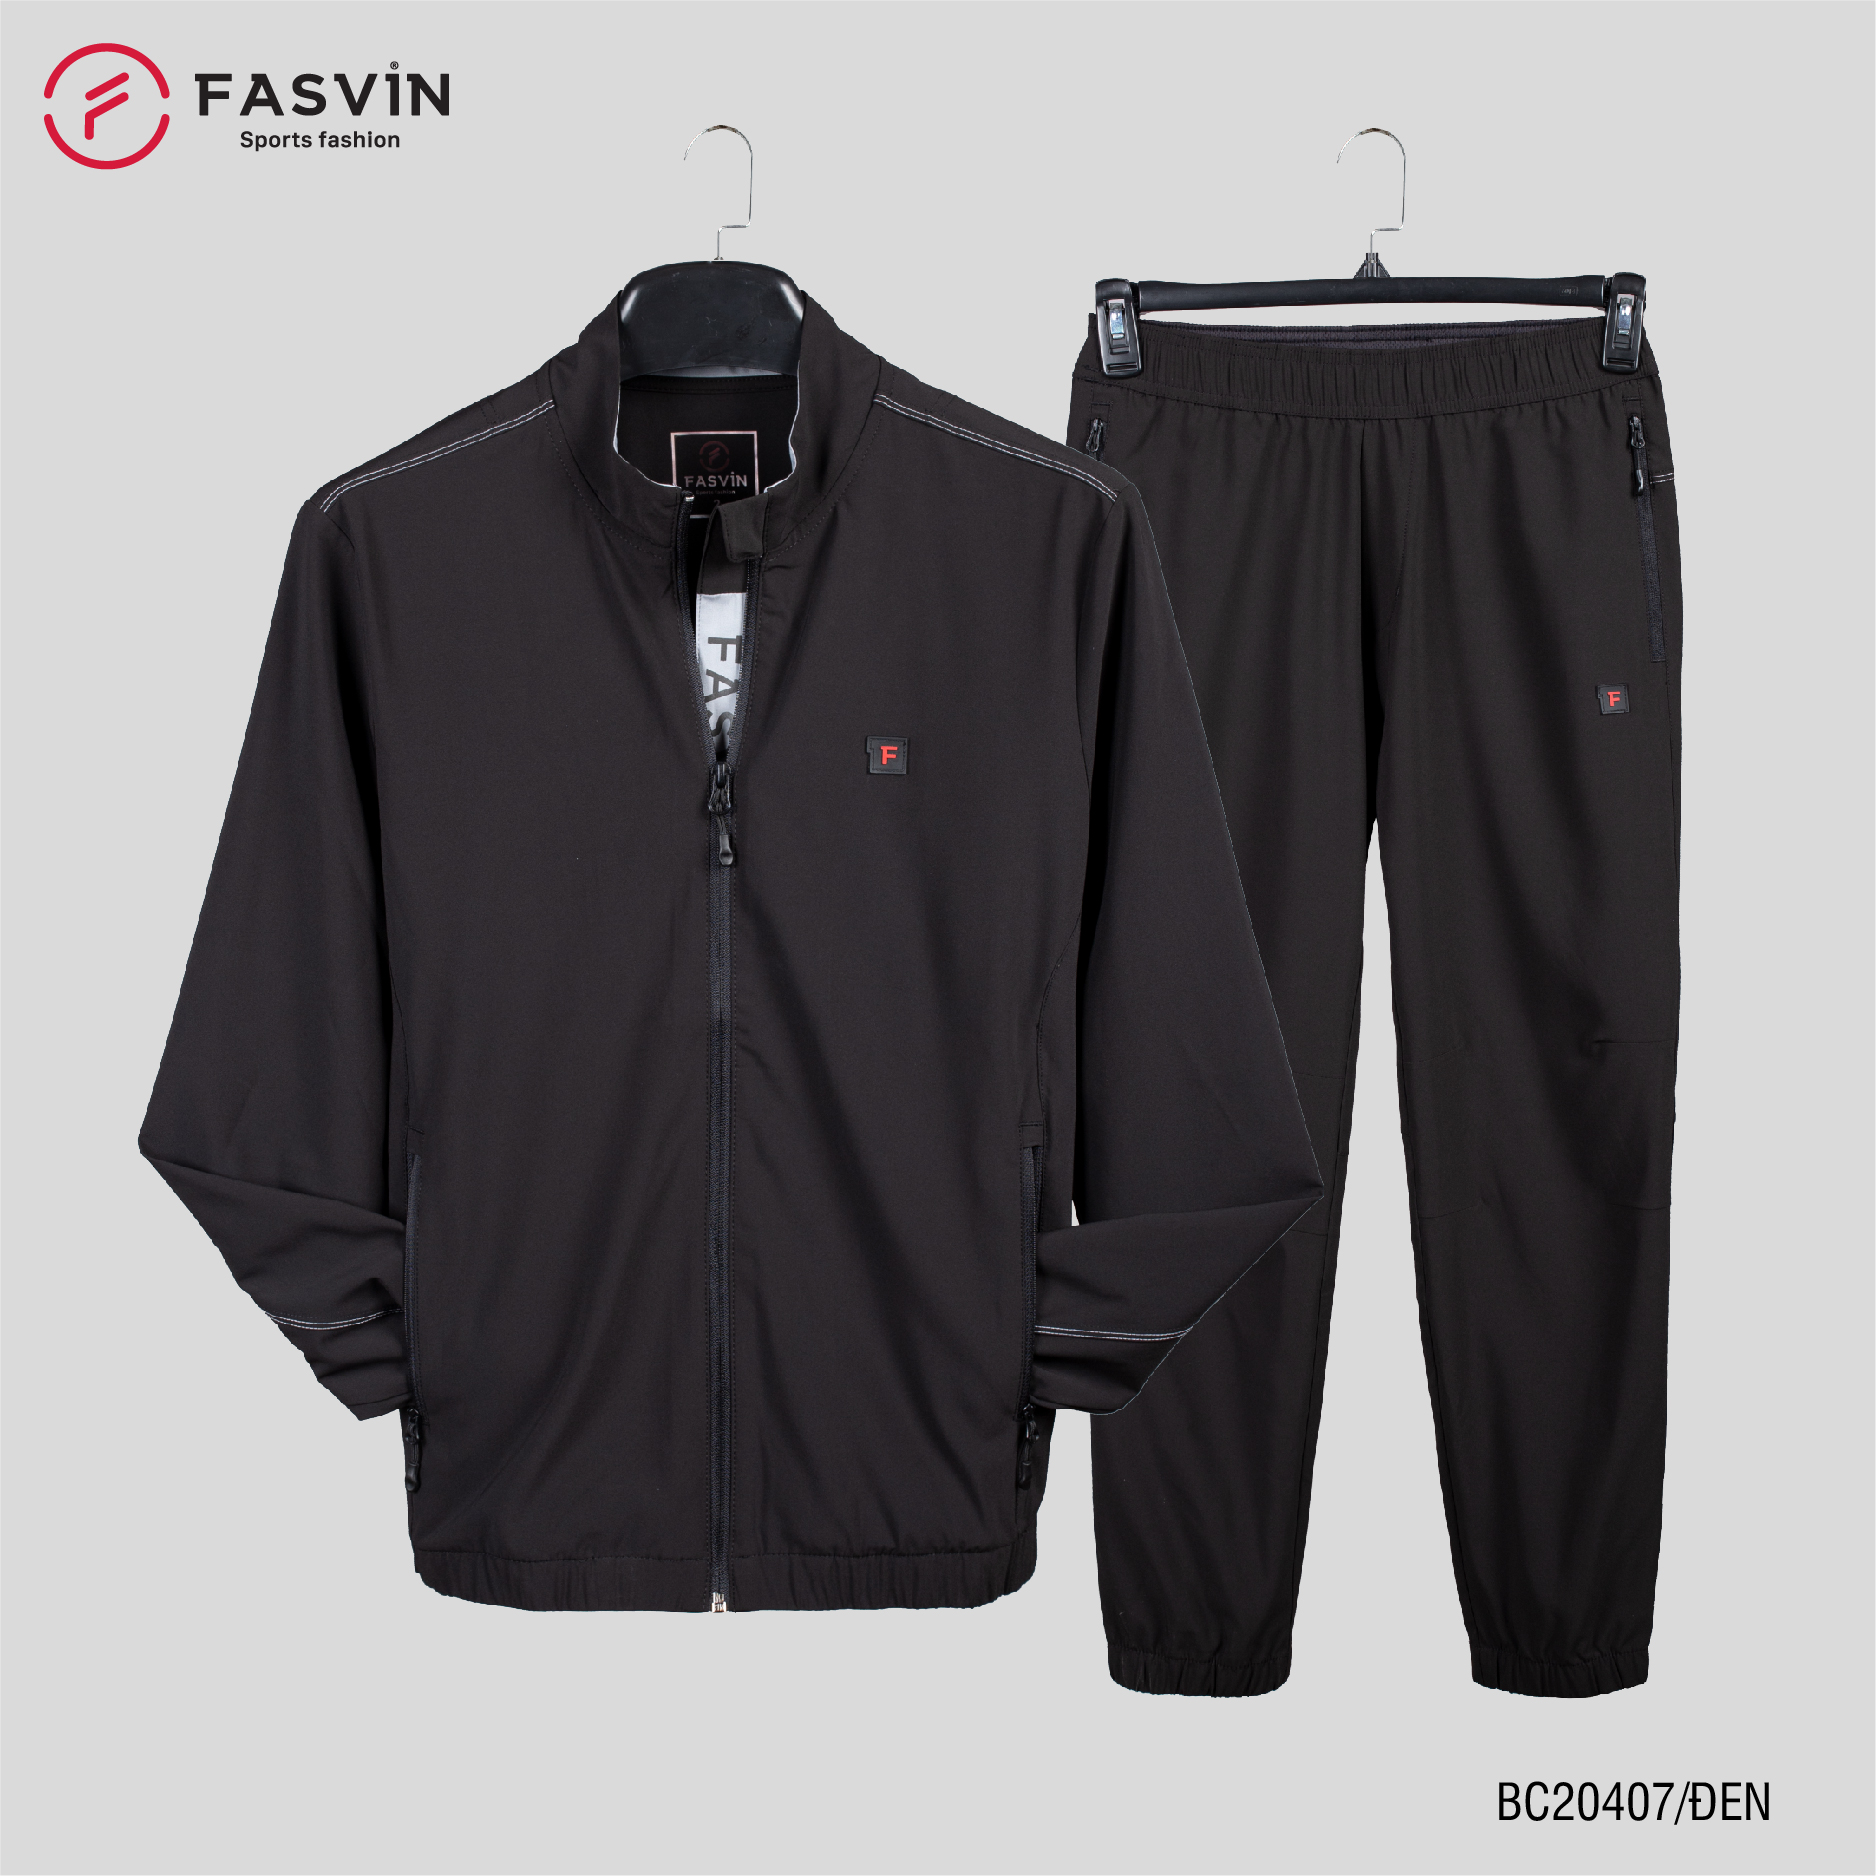 Bộ quần áo thể thao nam Fasvin BC20407.HN vải gió chun 01 lớp mềm nhẹ co dãn